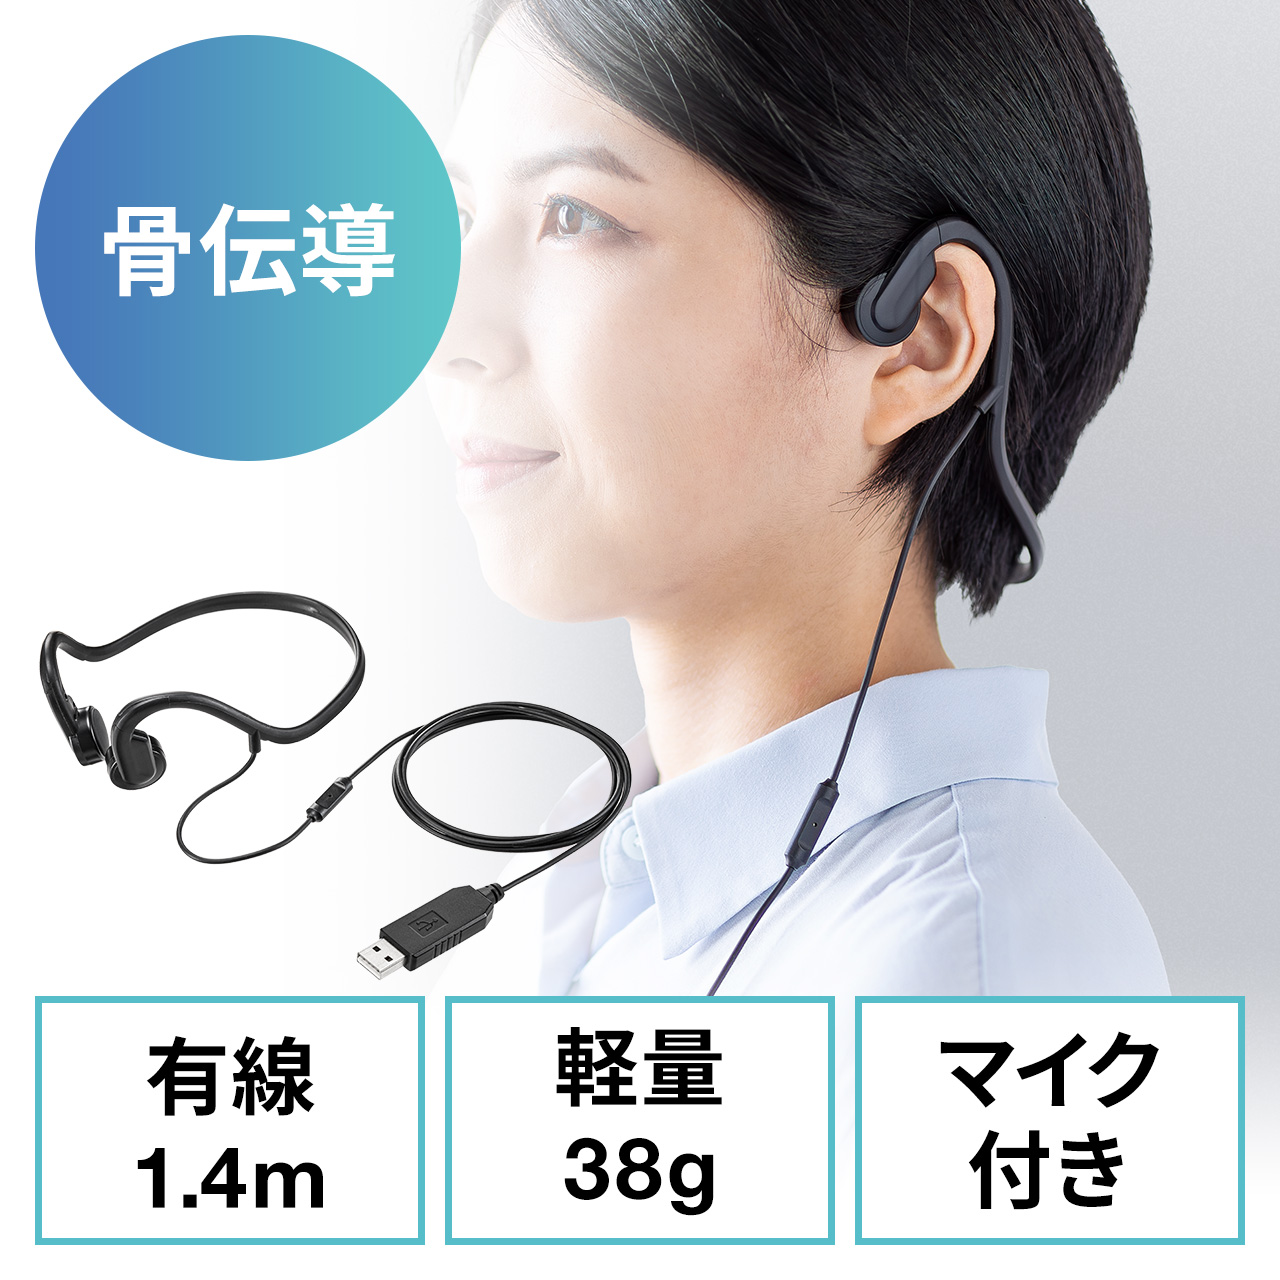 ワイヤレス イヤホン 自動ペアリング 両耳 片耳対応 小型 防水 (P7-GR-404)